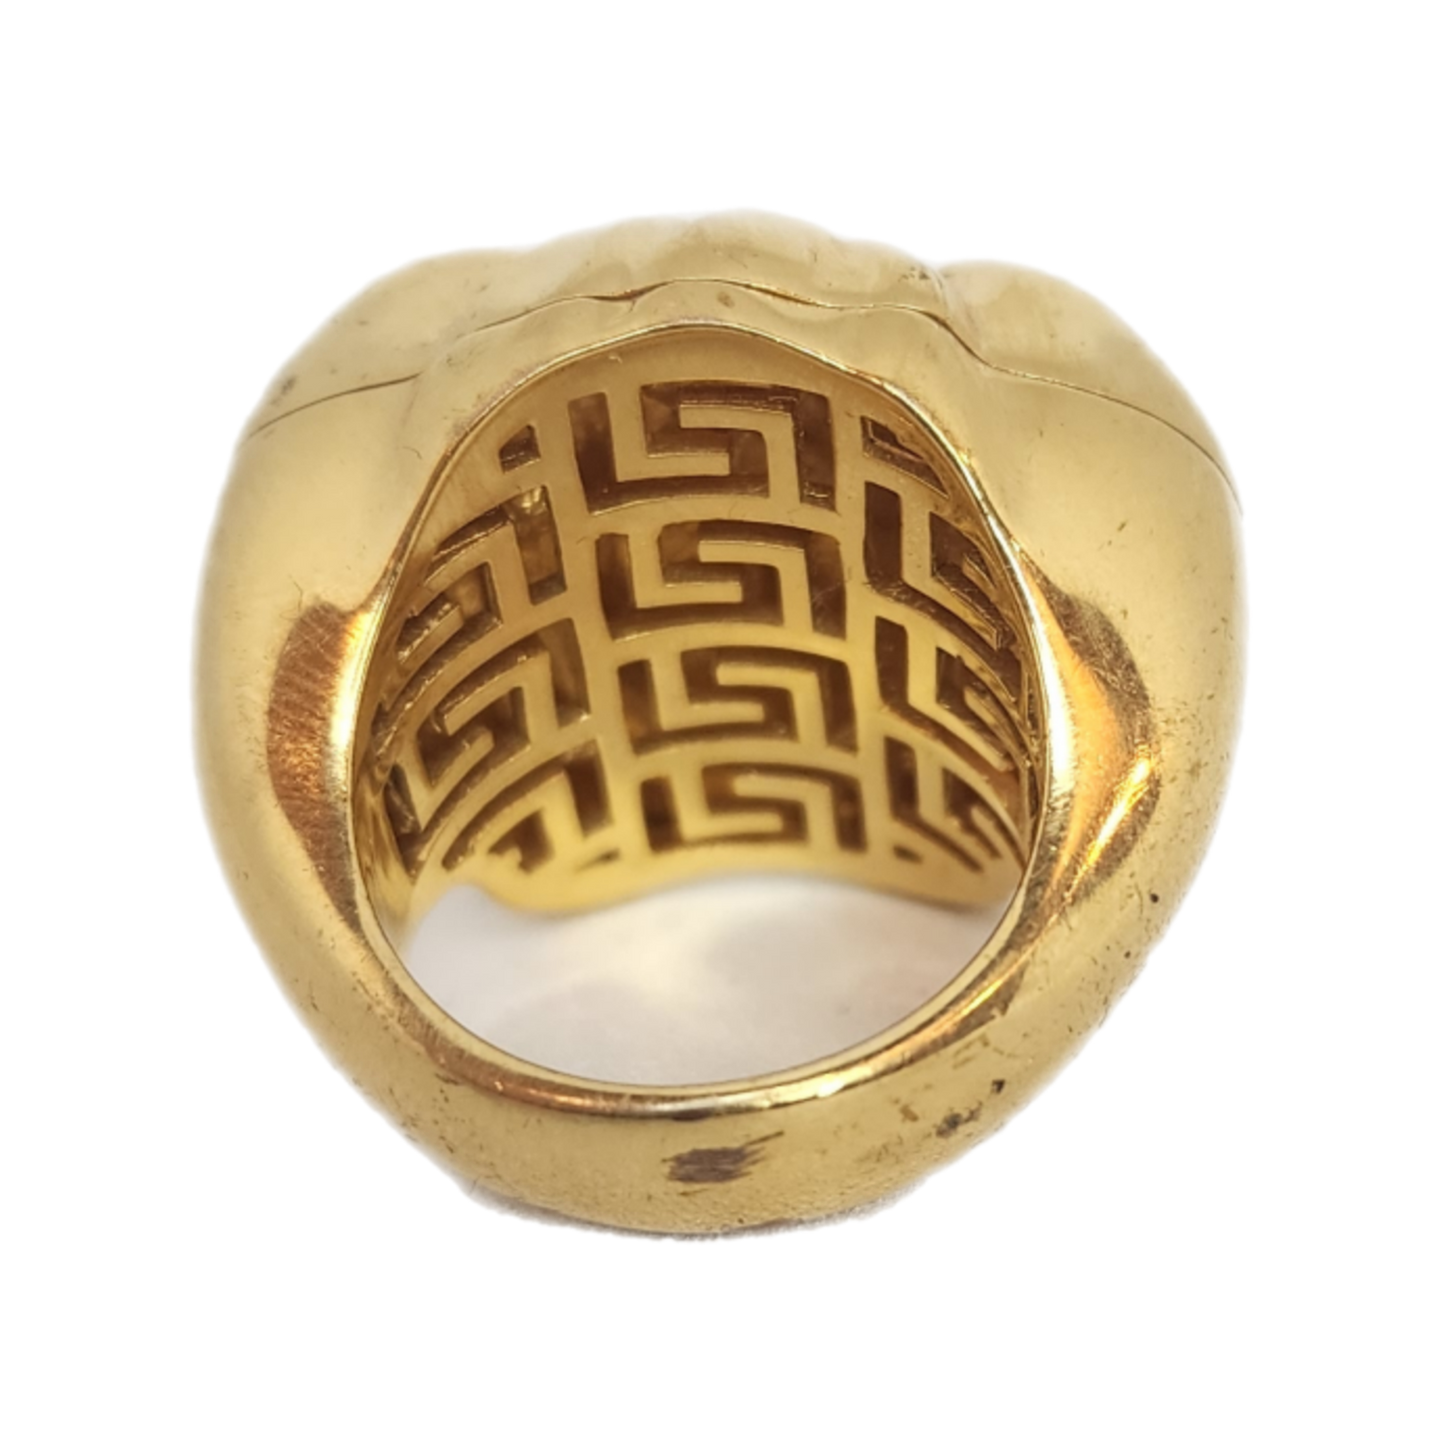 Versace - "Medusa Head Gold Ring"